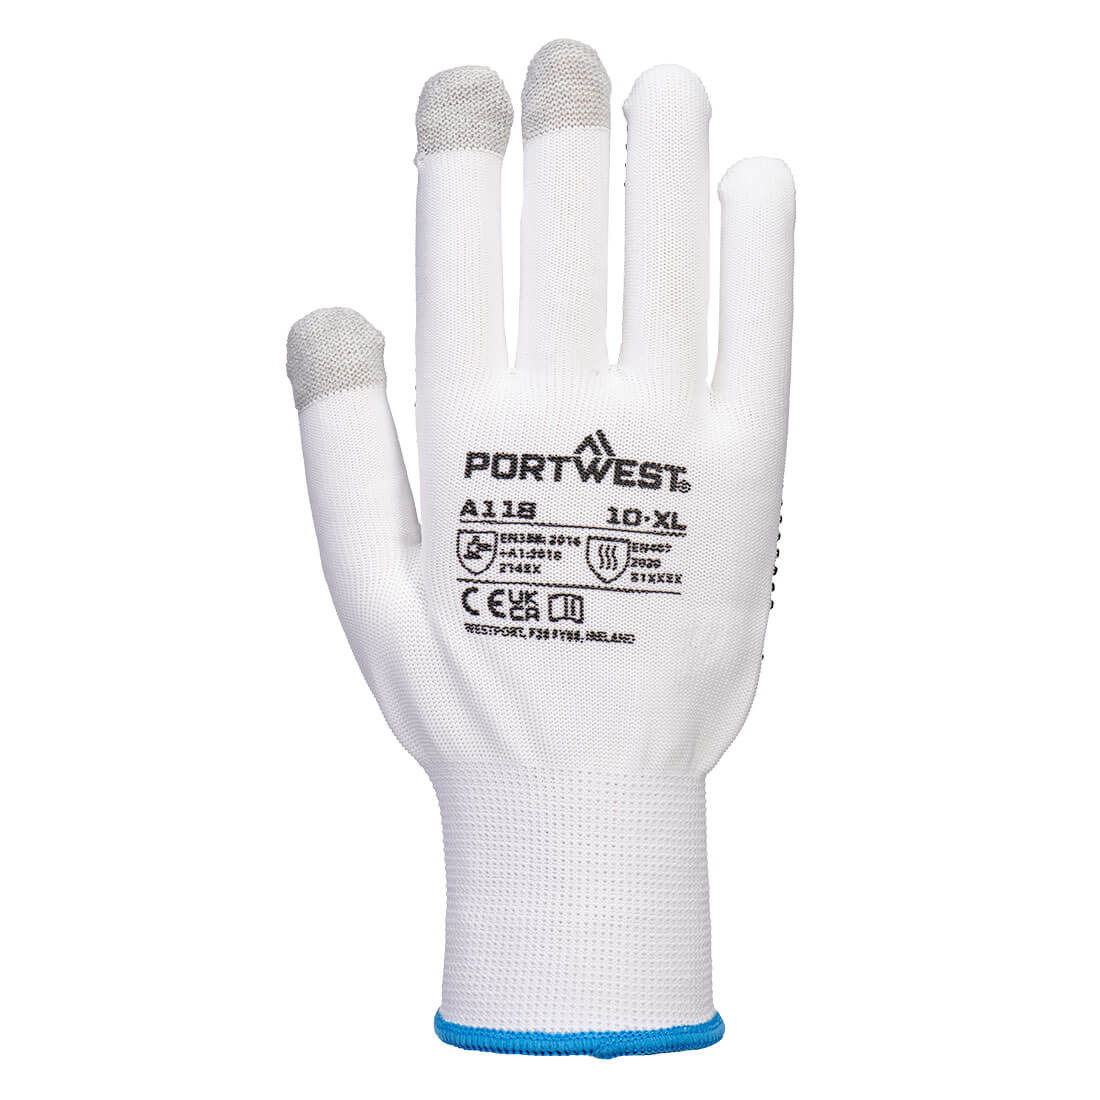 Grip 13 Gant PVC avec picots pour écran tactile (12 paires) - Les équipements de protection individuelle